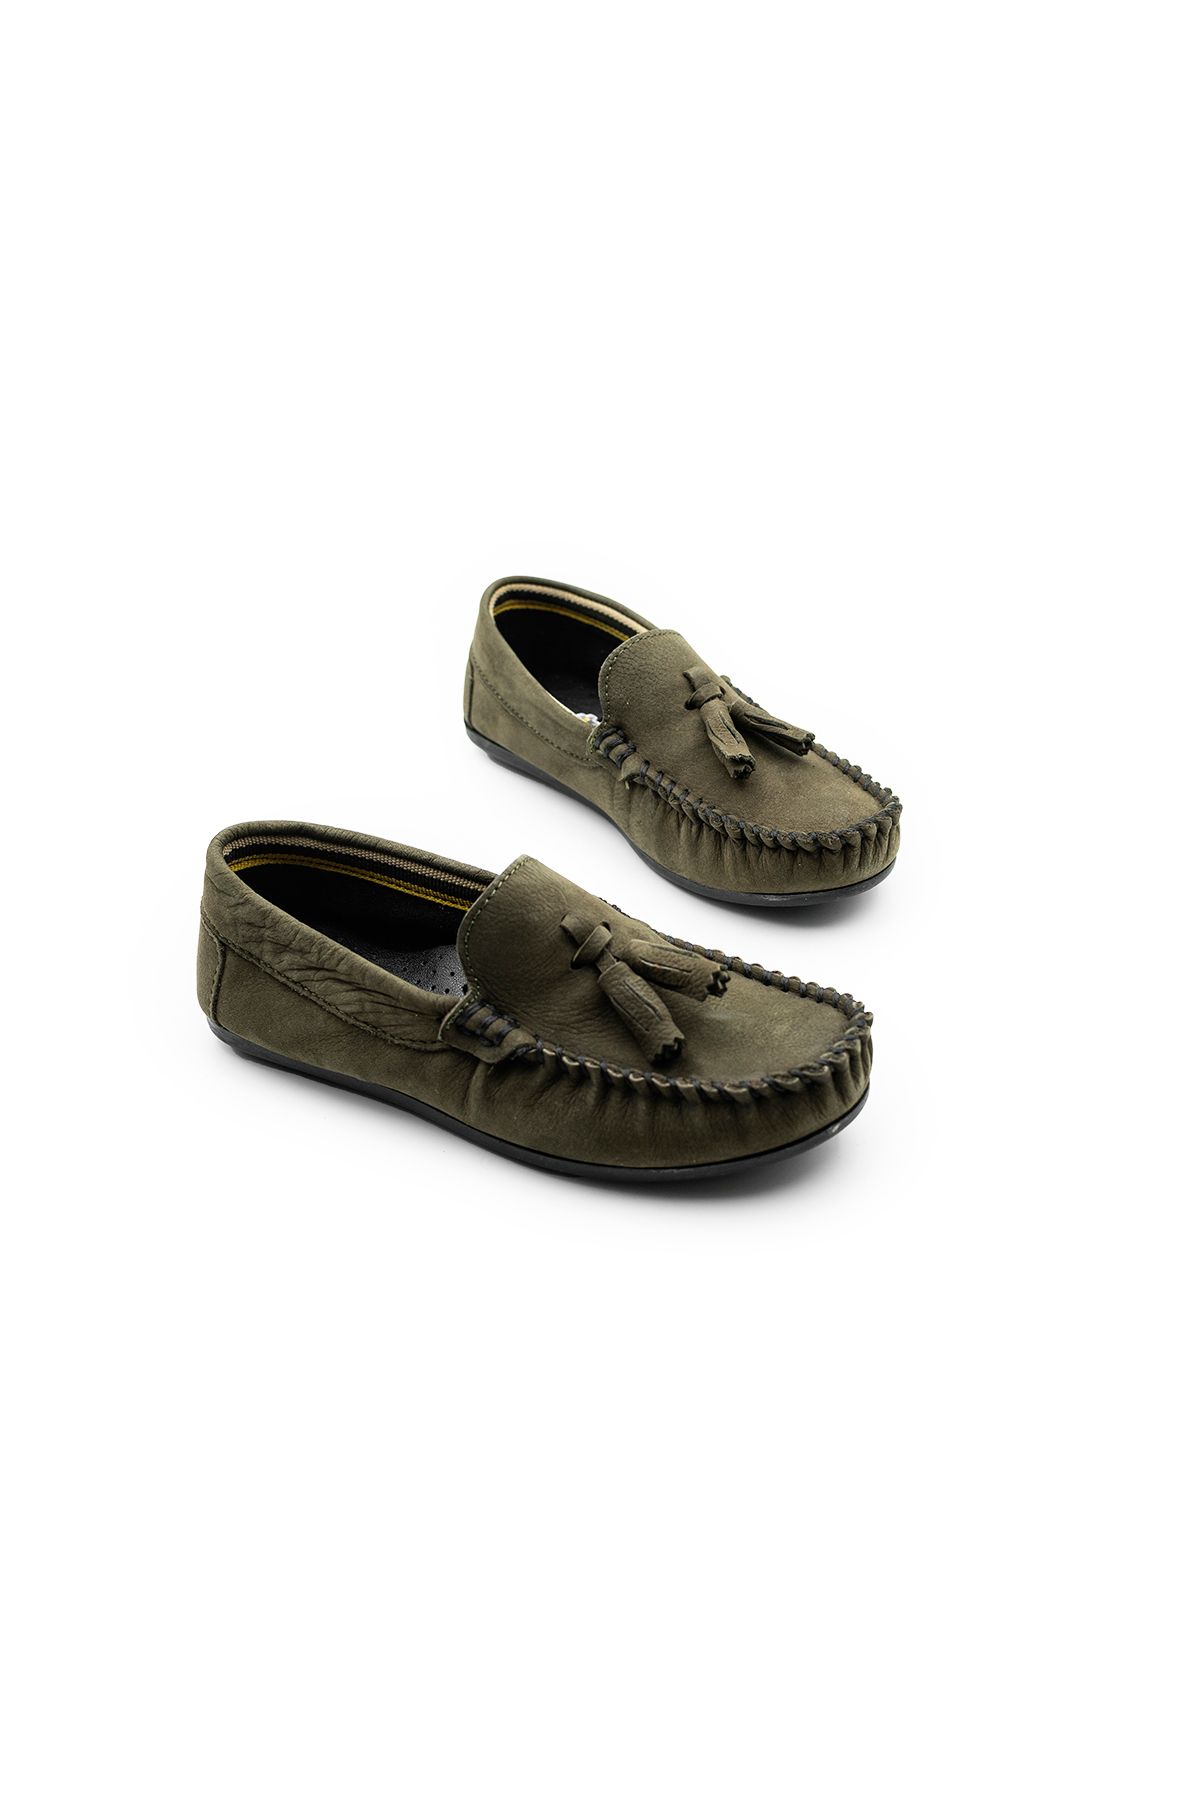 Brono Ayakkabı Rok Süet Hakiki Gerçek Deri Çocuk Ayakkabısı SD1600